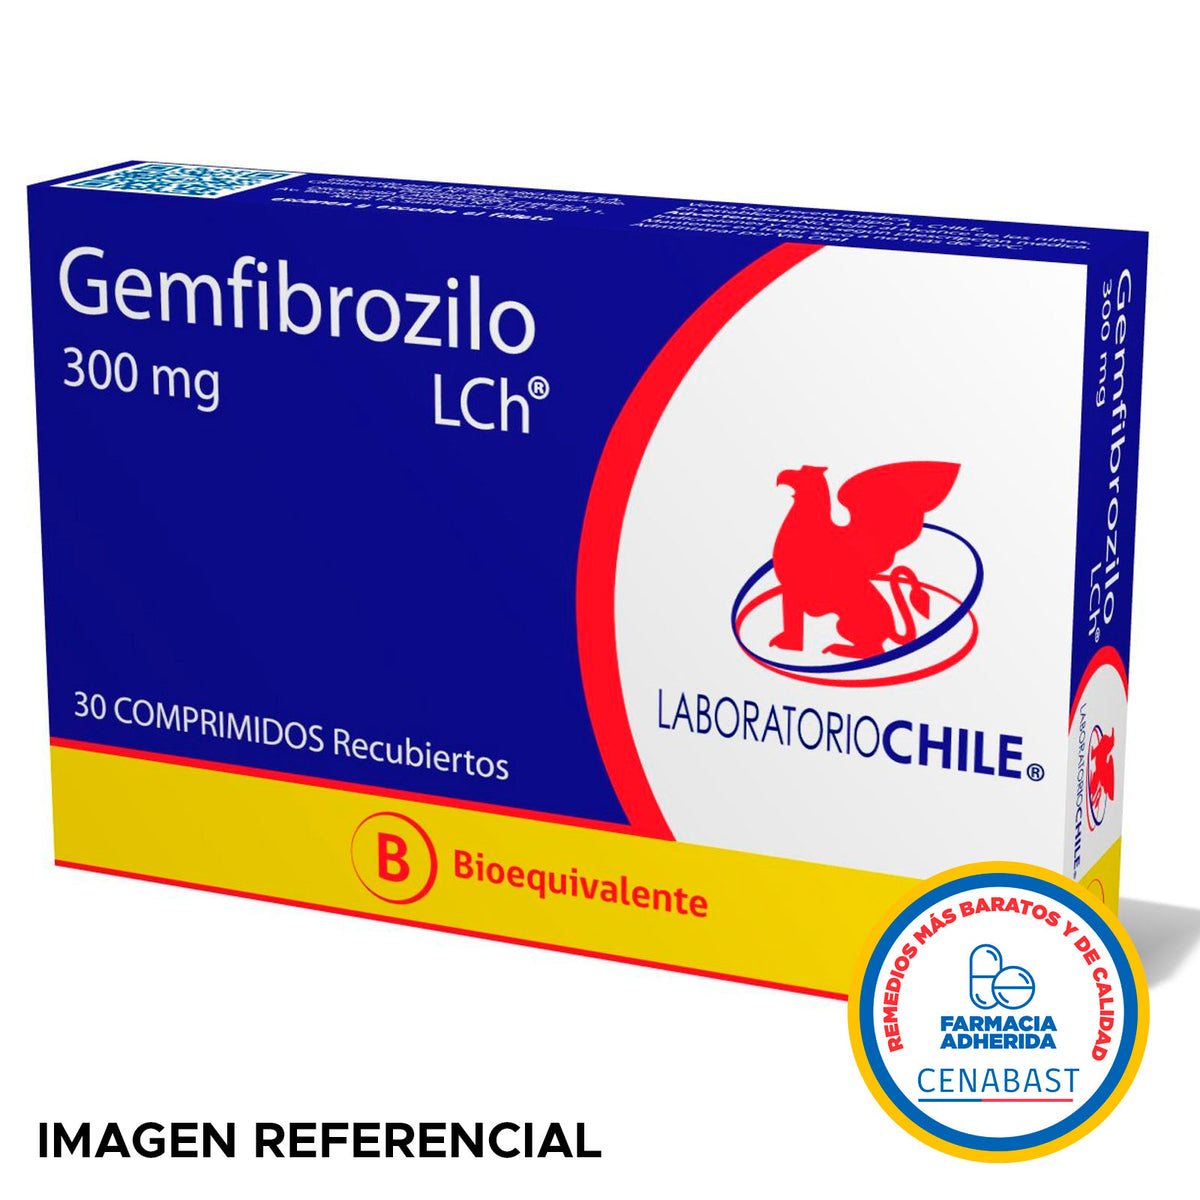 Gemfibrozilo Comprimidos Recubiertos 300mg Producto Cenabast